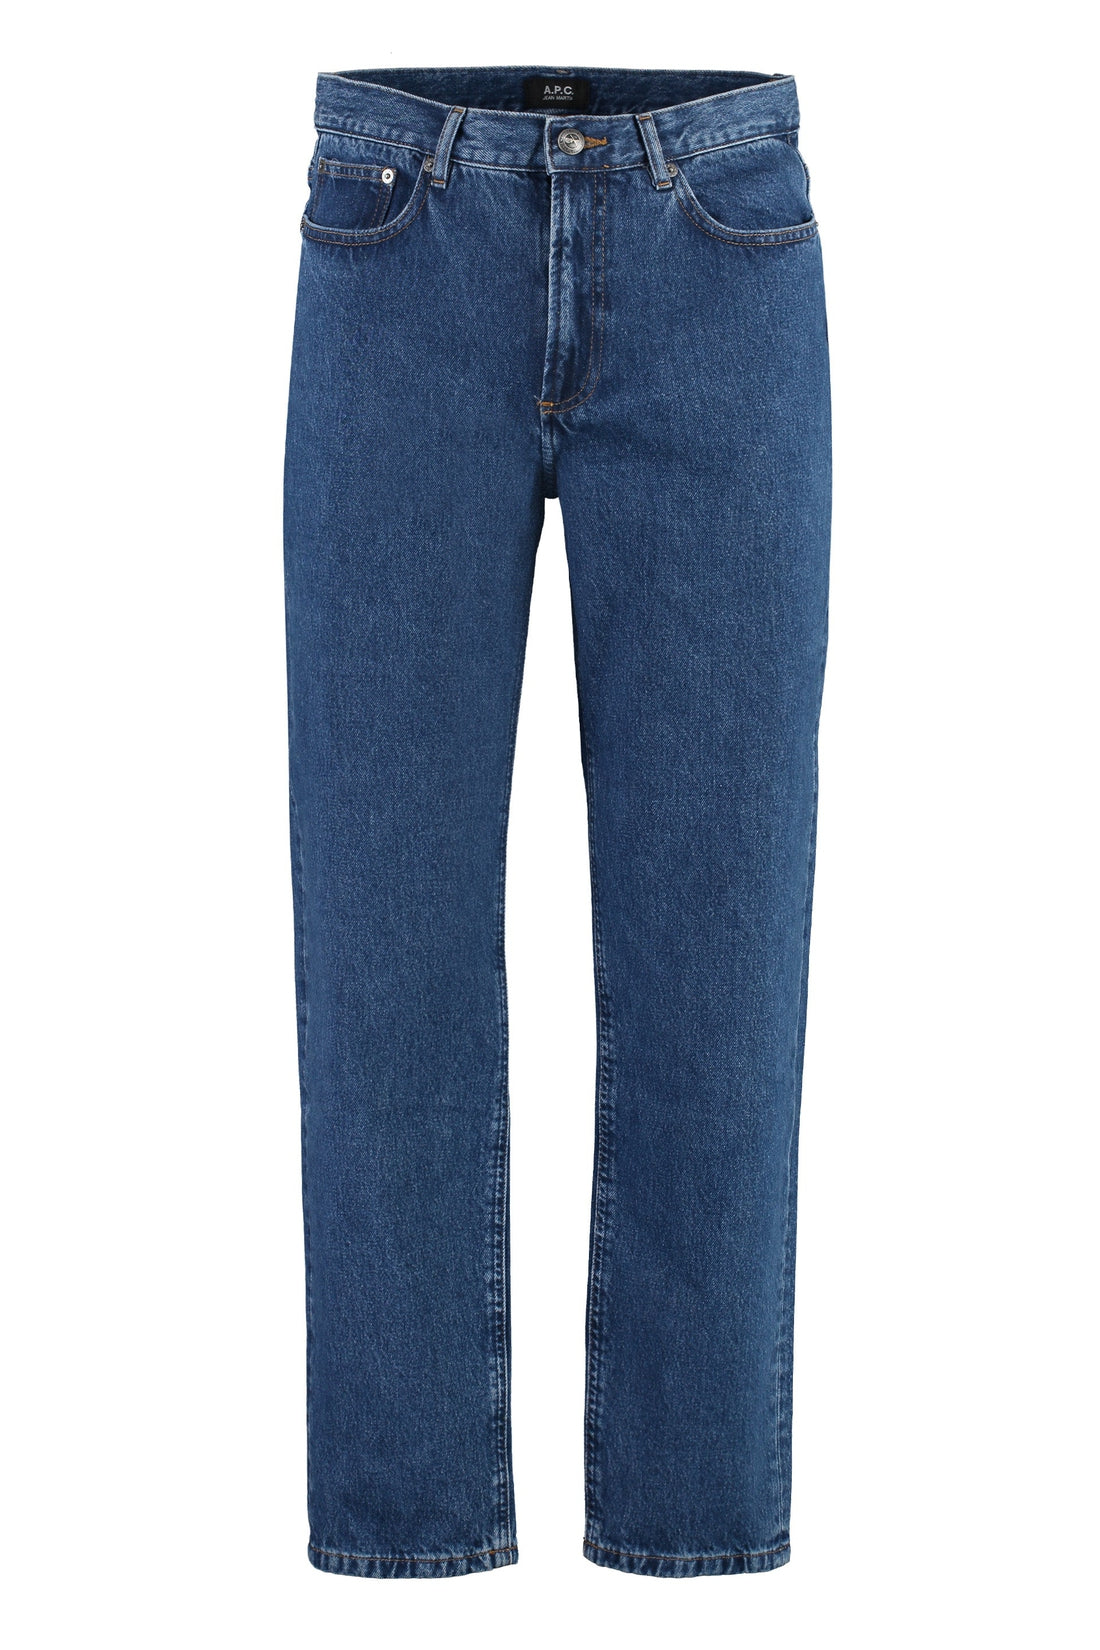 A.P.C.-OUTLET-SALE-5-pocket straight-leg jeans-ARCHIVIST